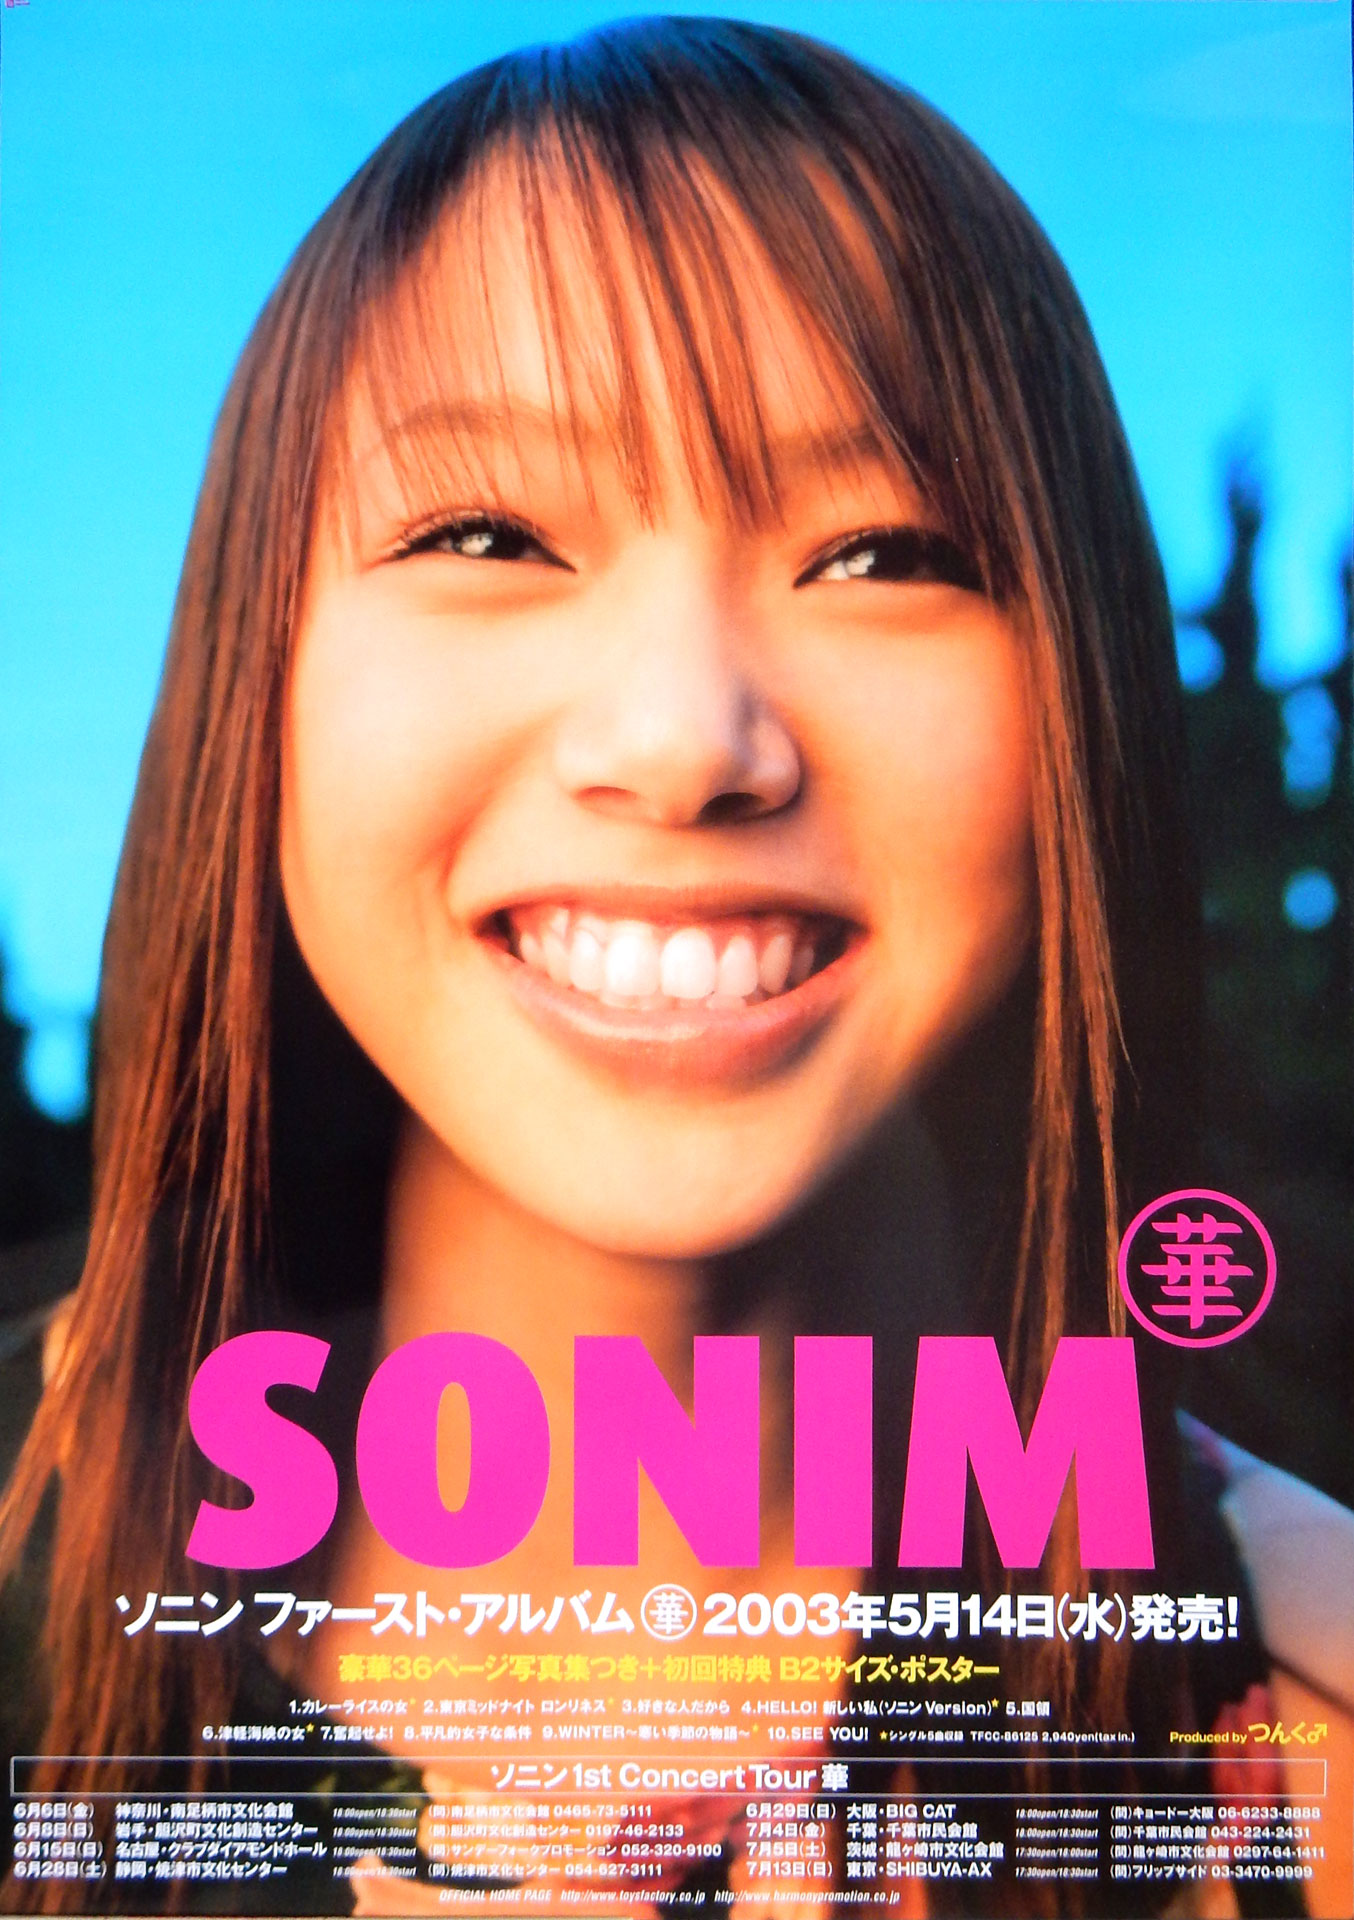 ソニン 「華」 ファーストアルバムのポスター